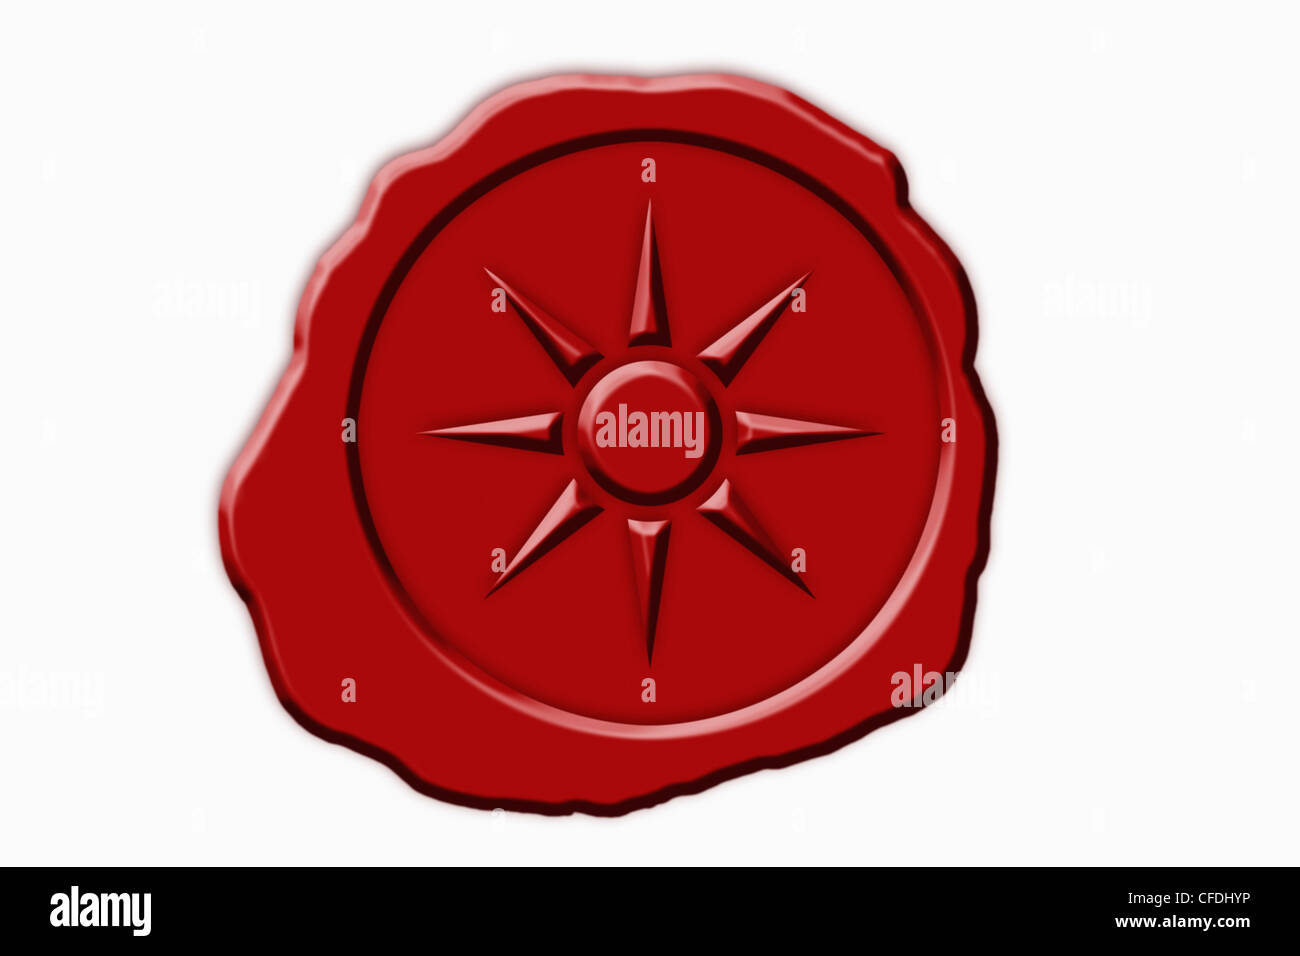 Dettaglio foto di un sigillo rosso con un simbolo del sole in medio Foto Stock